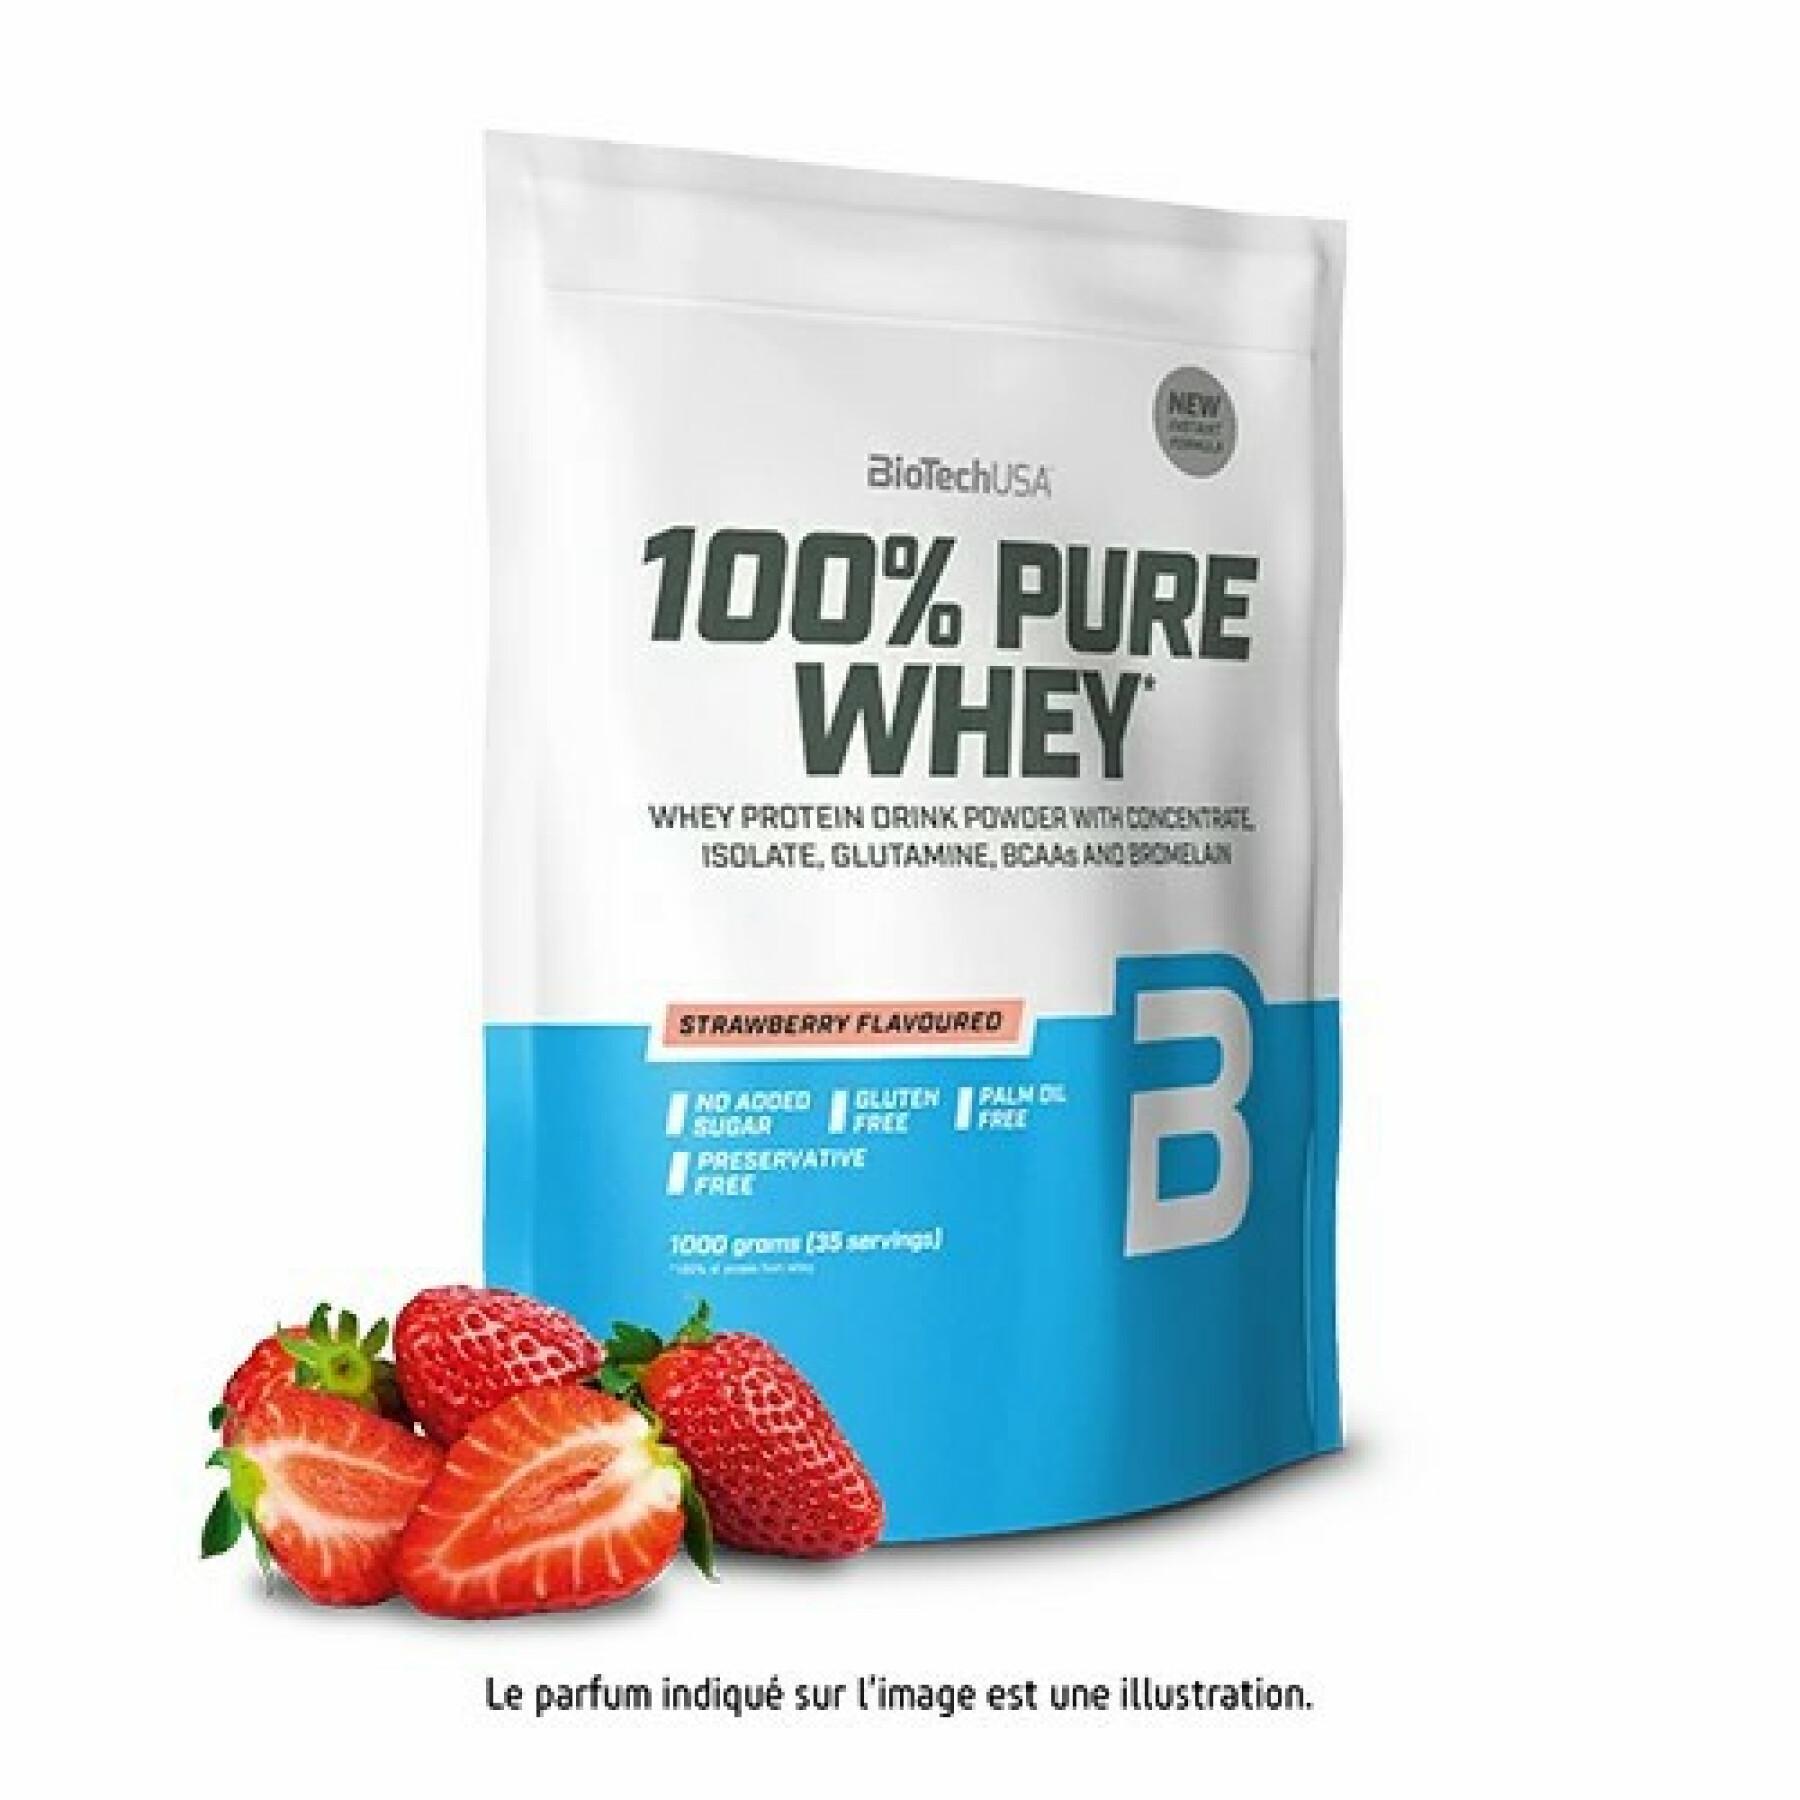 Paquete de 10 bolsas de proteína de suero 100% pura Biotech USA - Fraise - 1kg